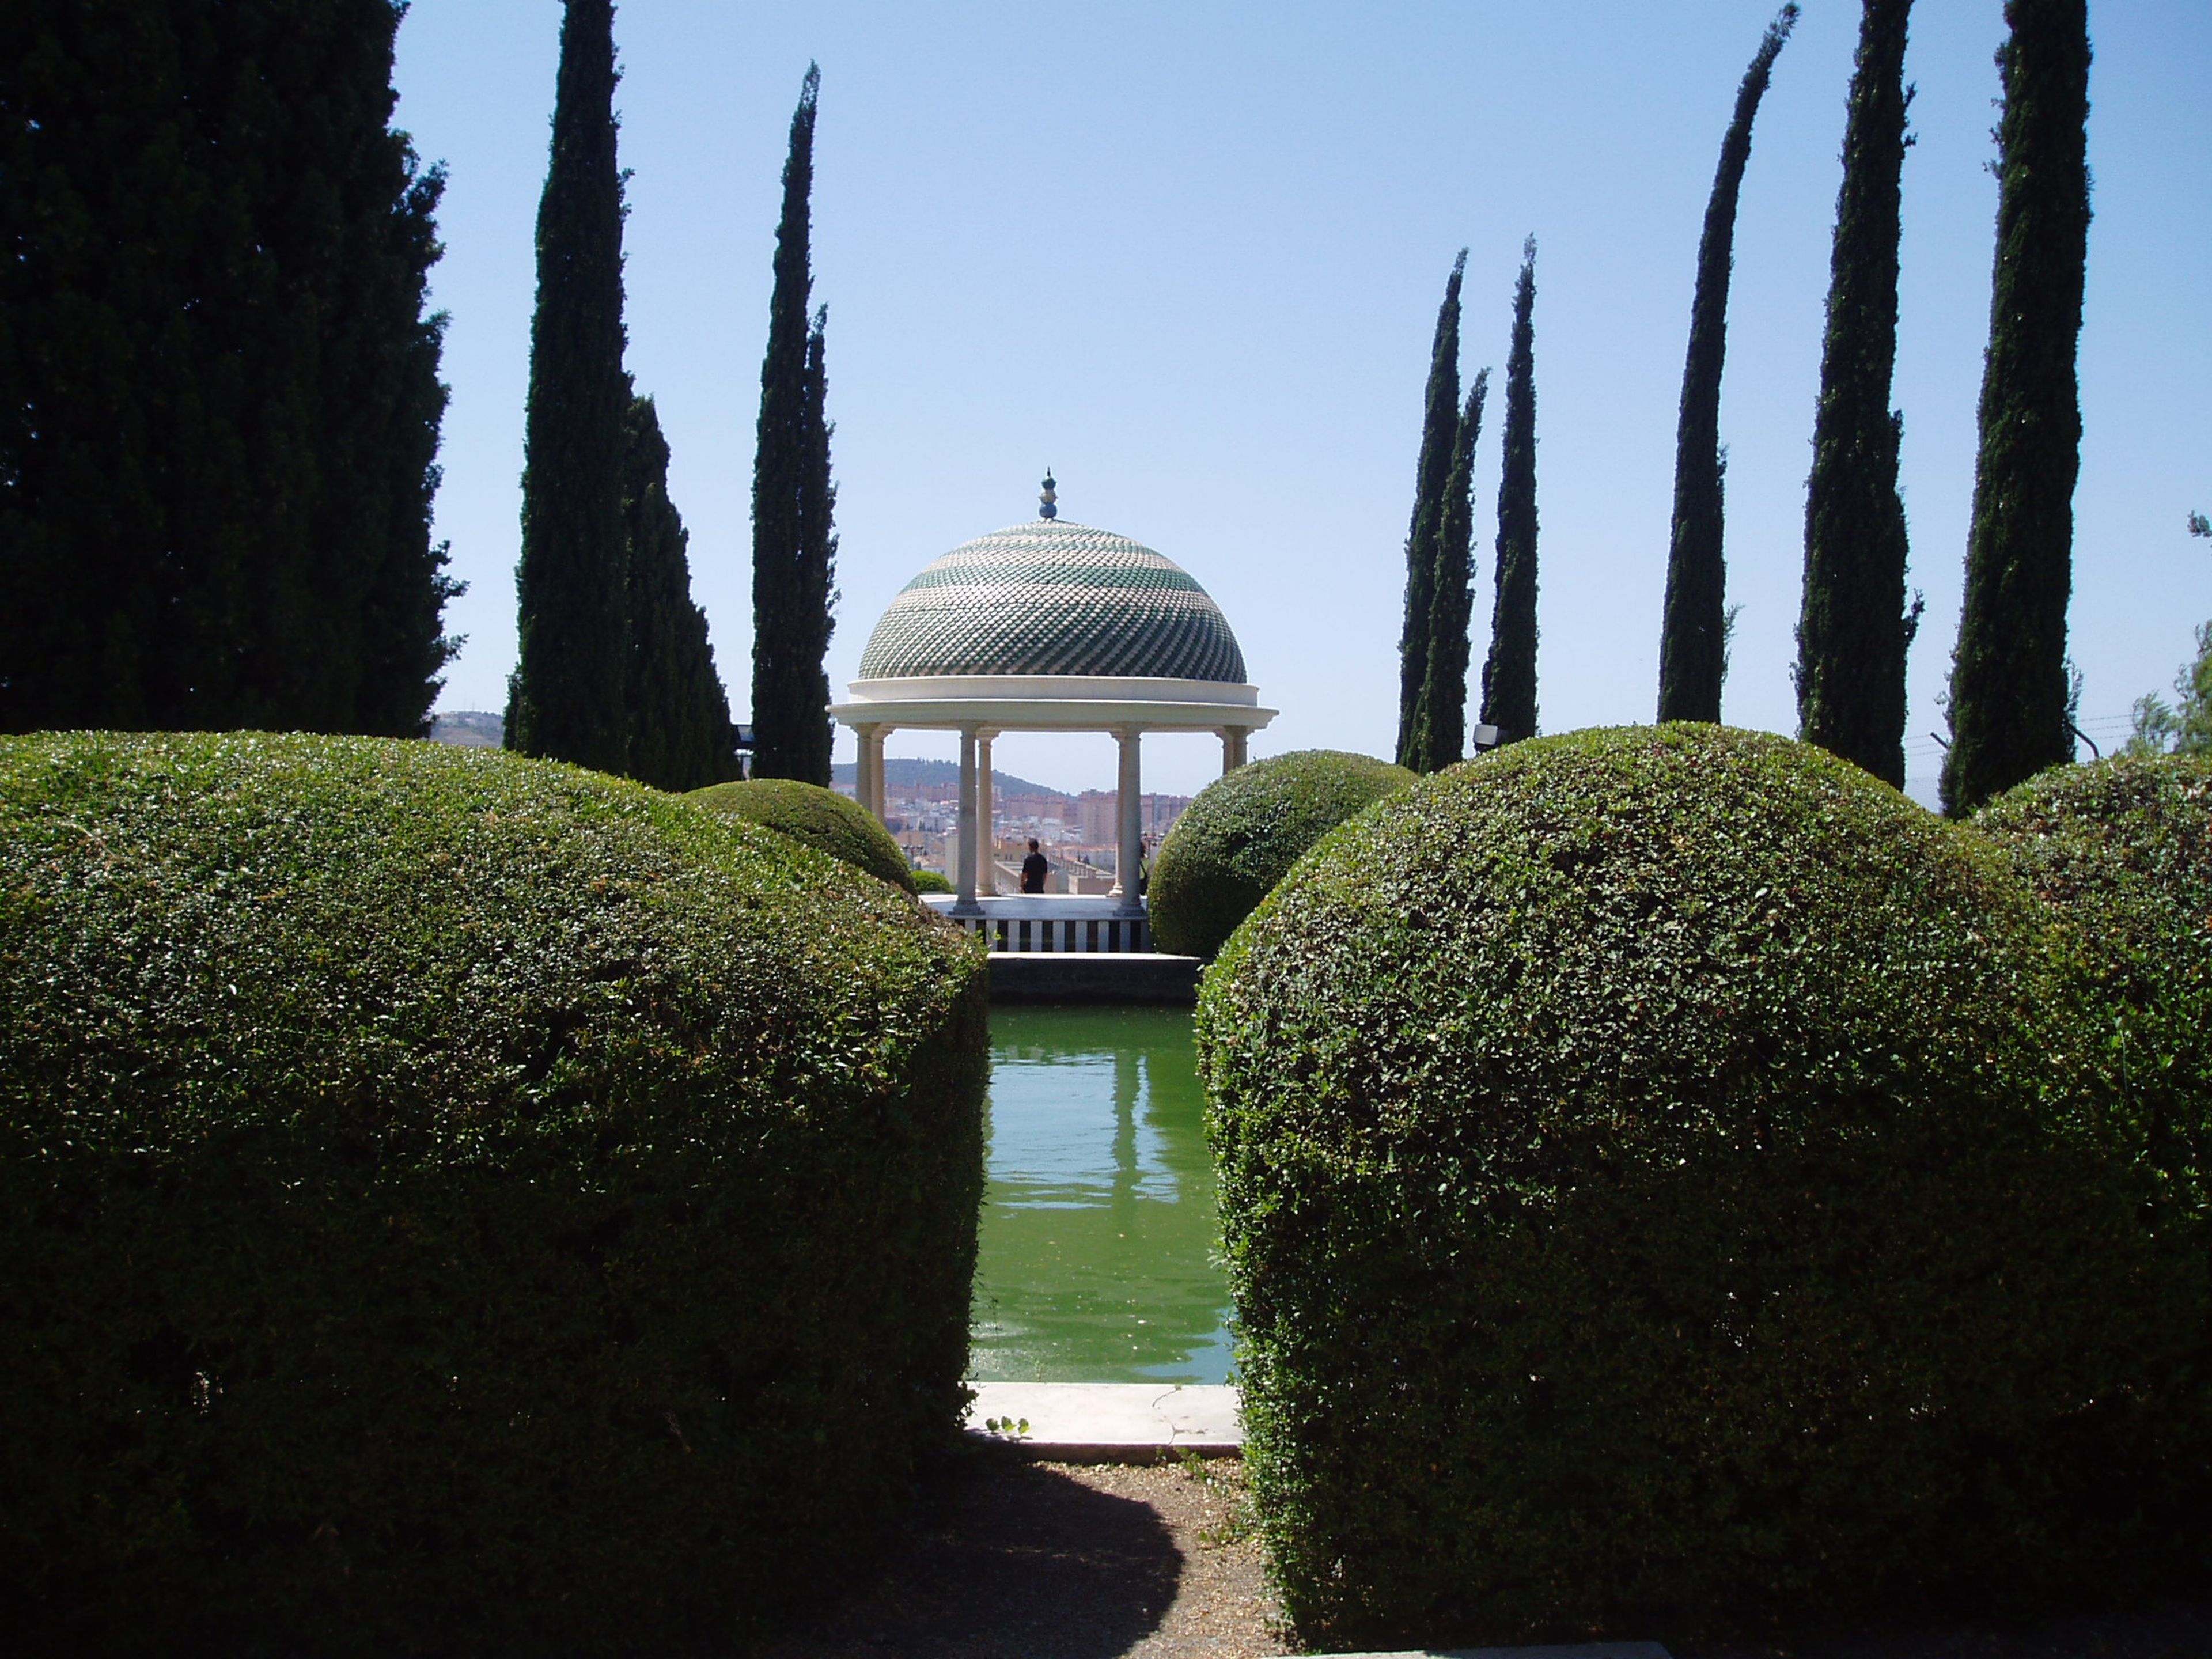 Jardín Botánico Histórico de la Concepción, Málaga